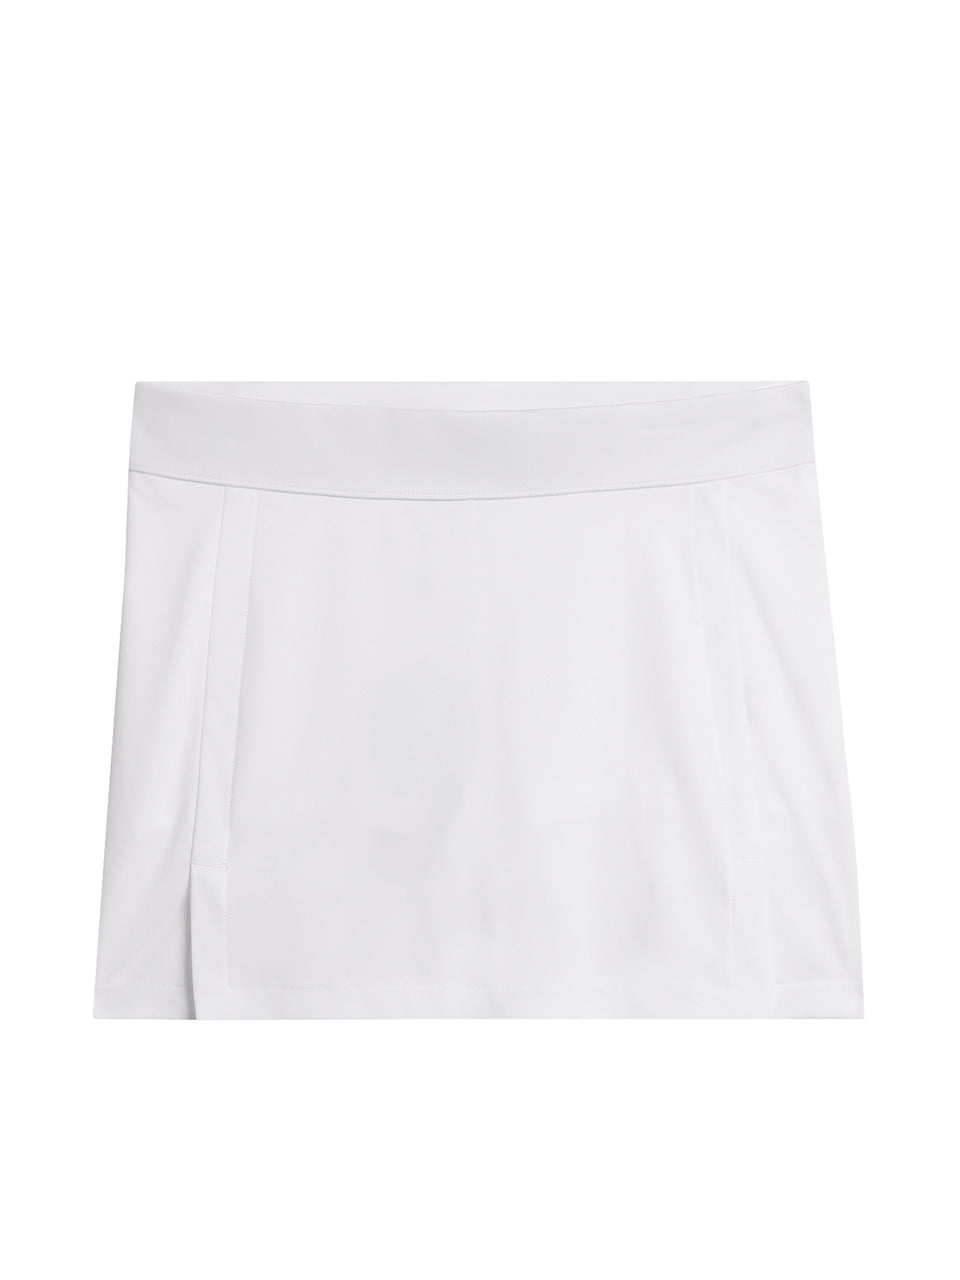 Amelie Skirt / White